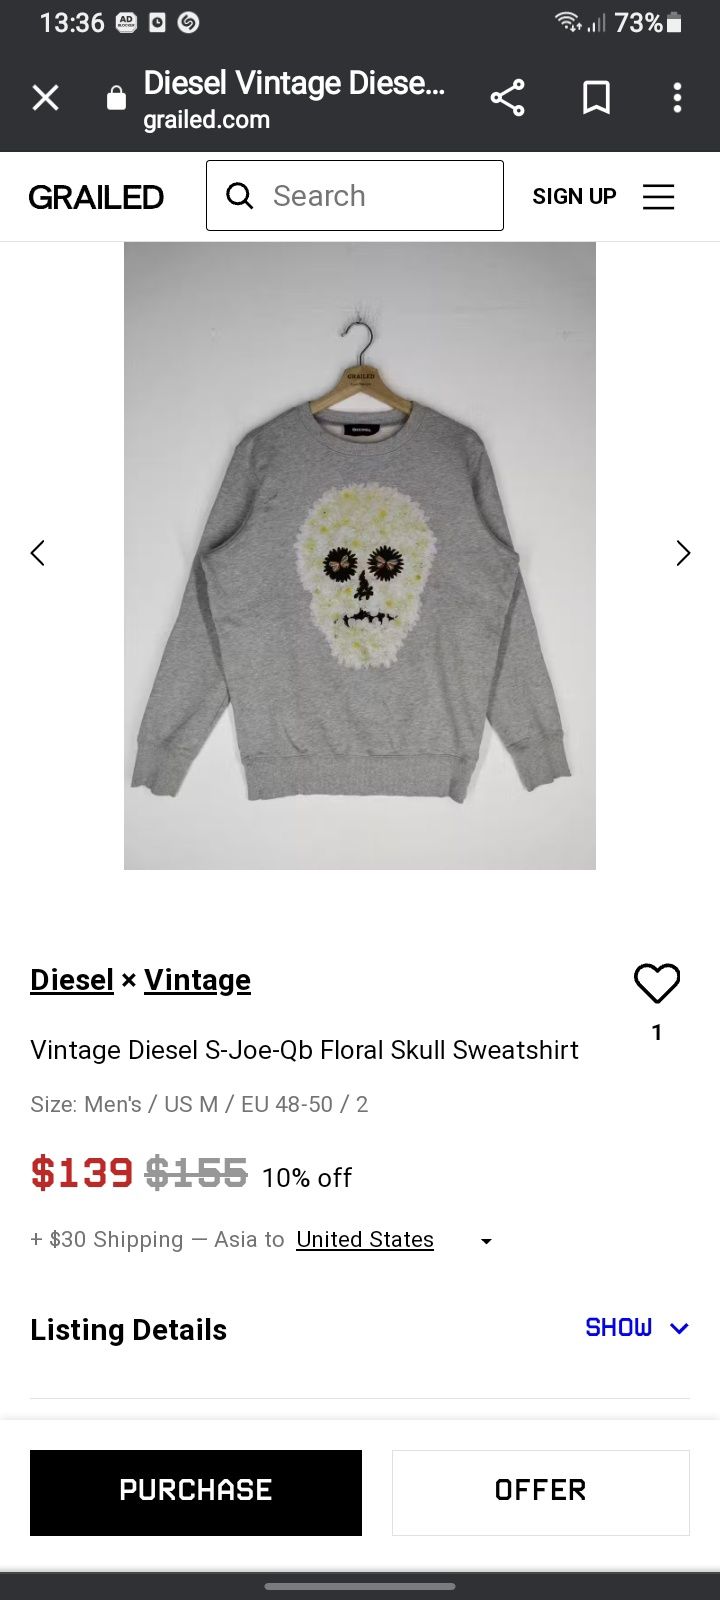 Wts Vintage Diesel S-Joe-Qb Floral Skull Sweatshirt